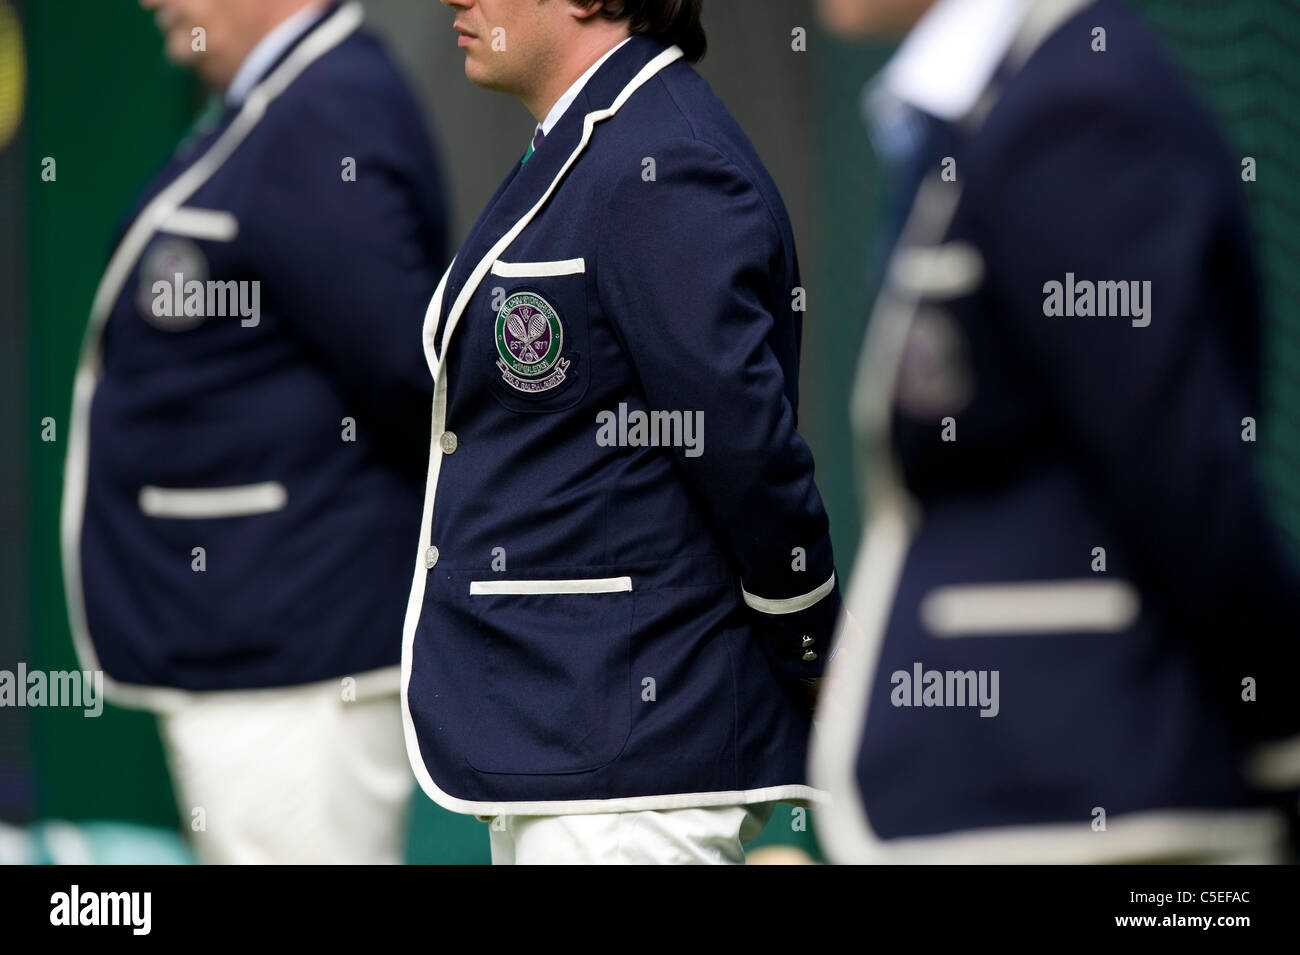 Des juges de ligne Polo Ralph Lauren veste détail pendant l'édition 2011 des Championnats de tennis de Wimbledon Banque D'Images